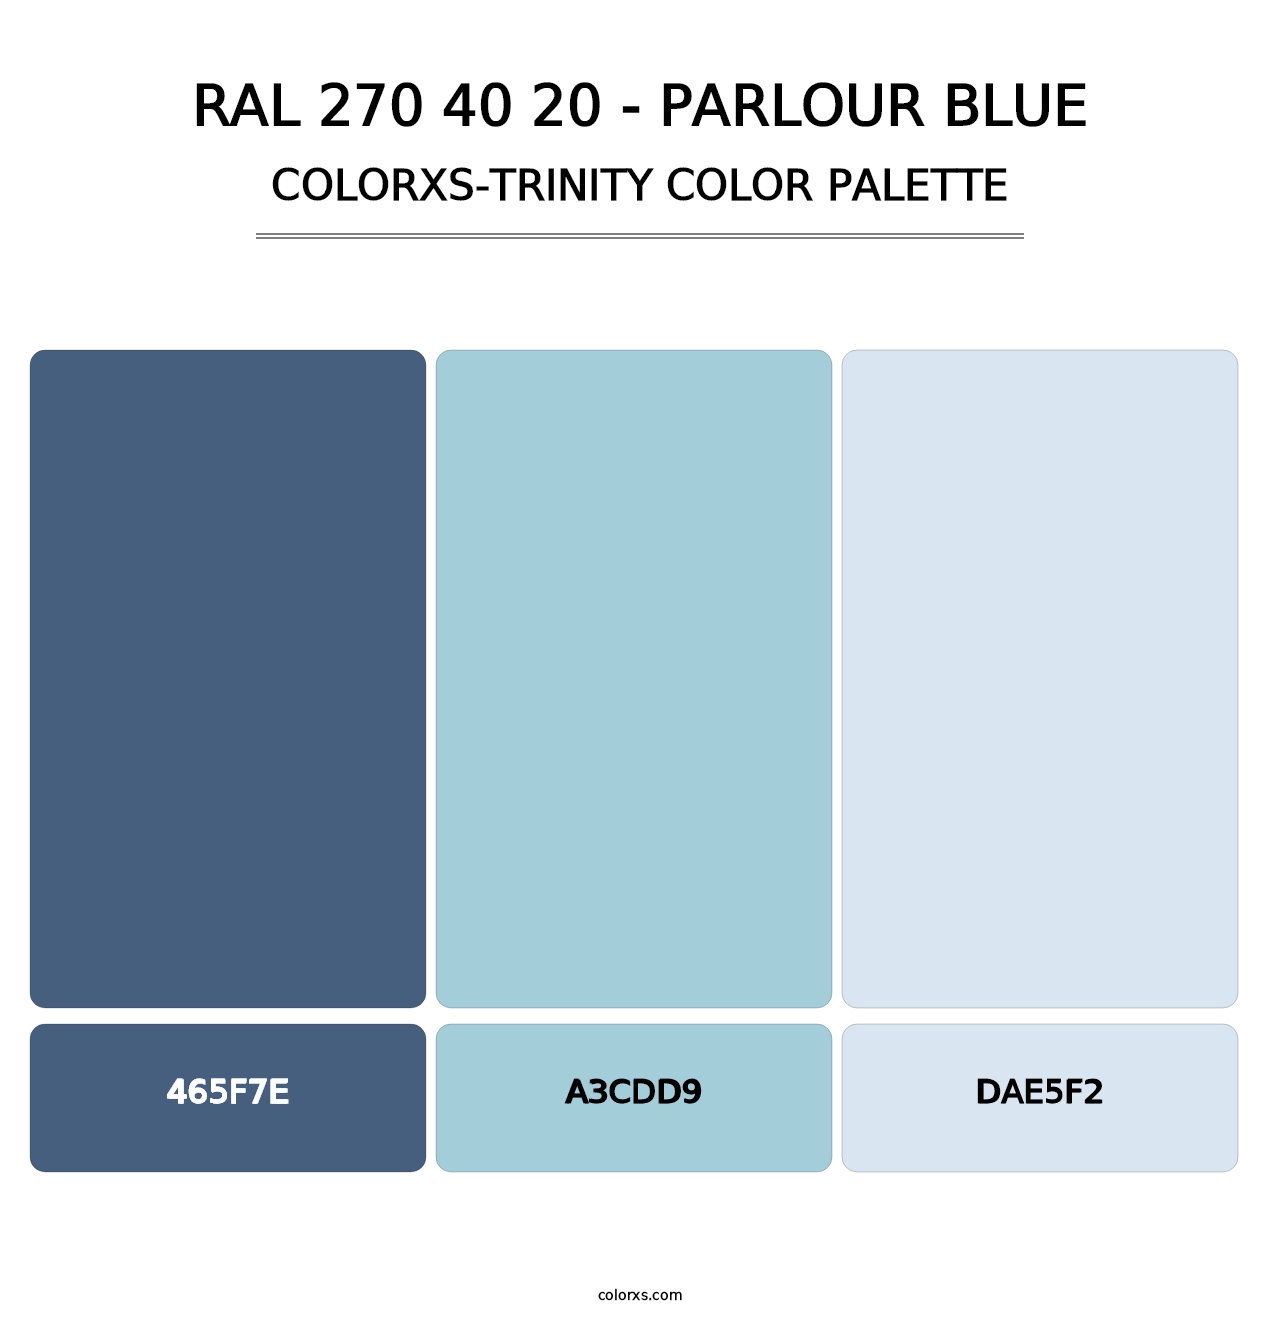 RAL 270 40 20 - Parlour Blue - Colorxs Trinity Palette